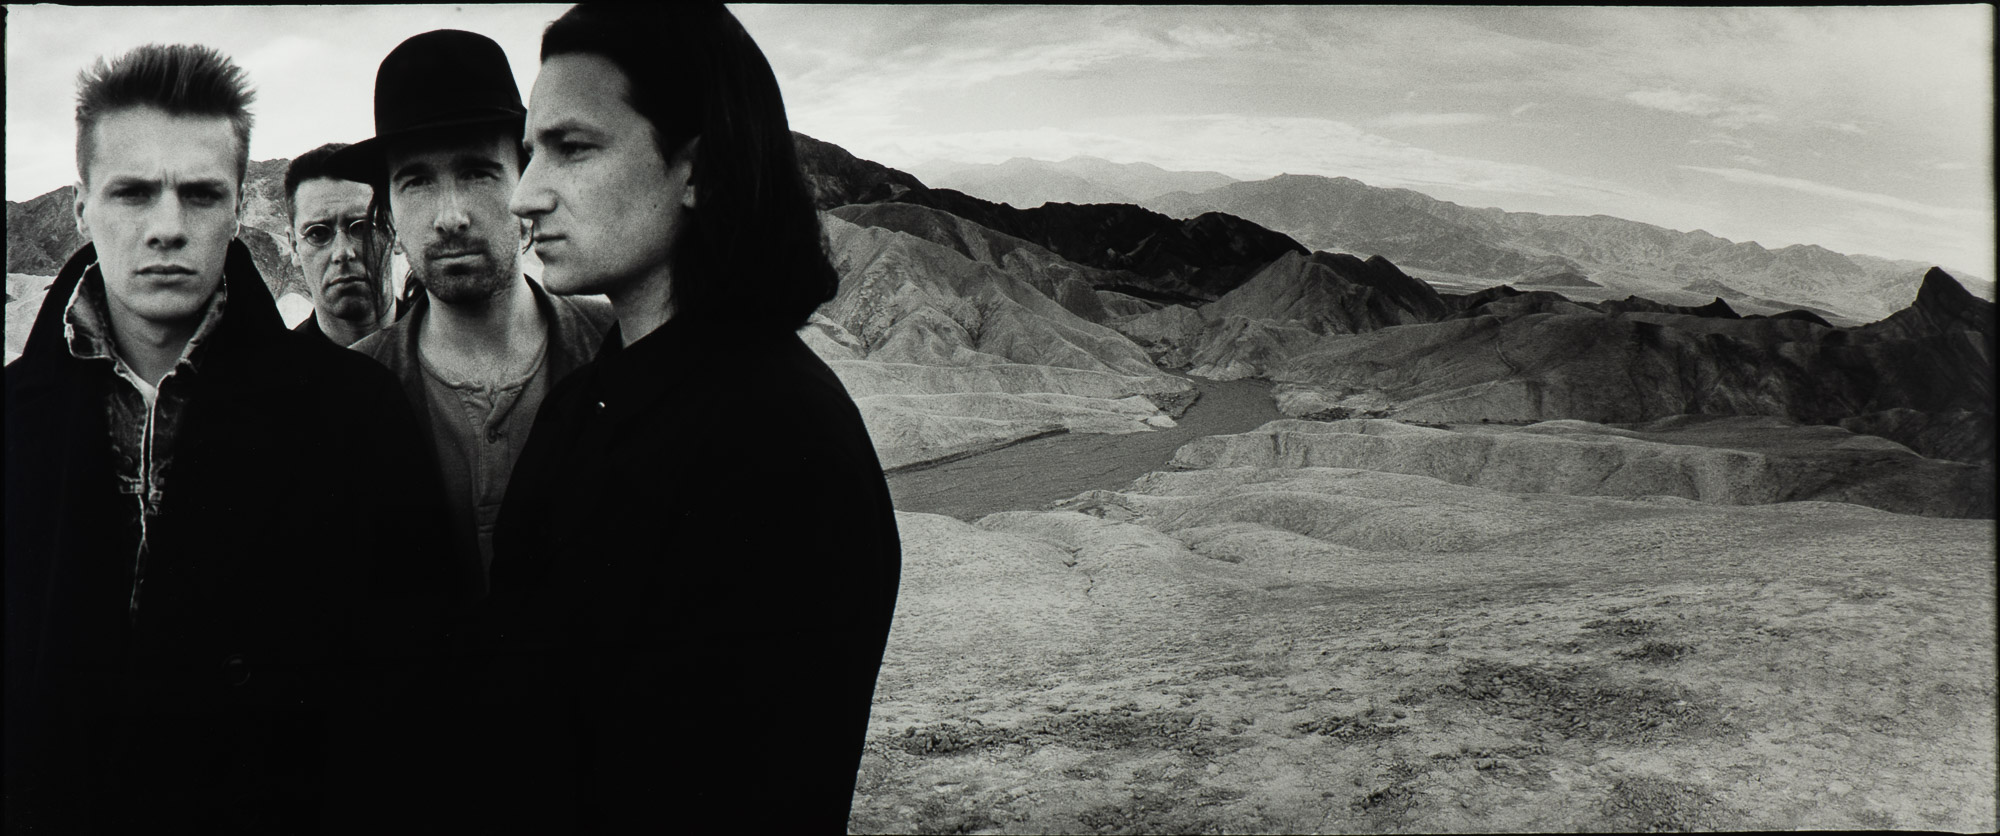 U2, Death Valley ( 1986)